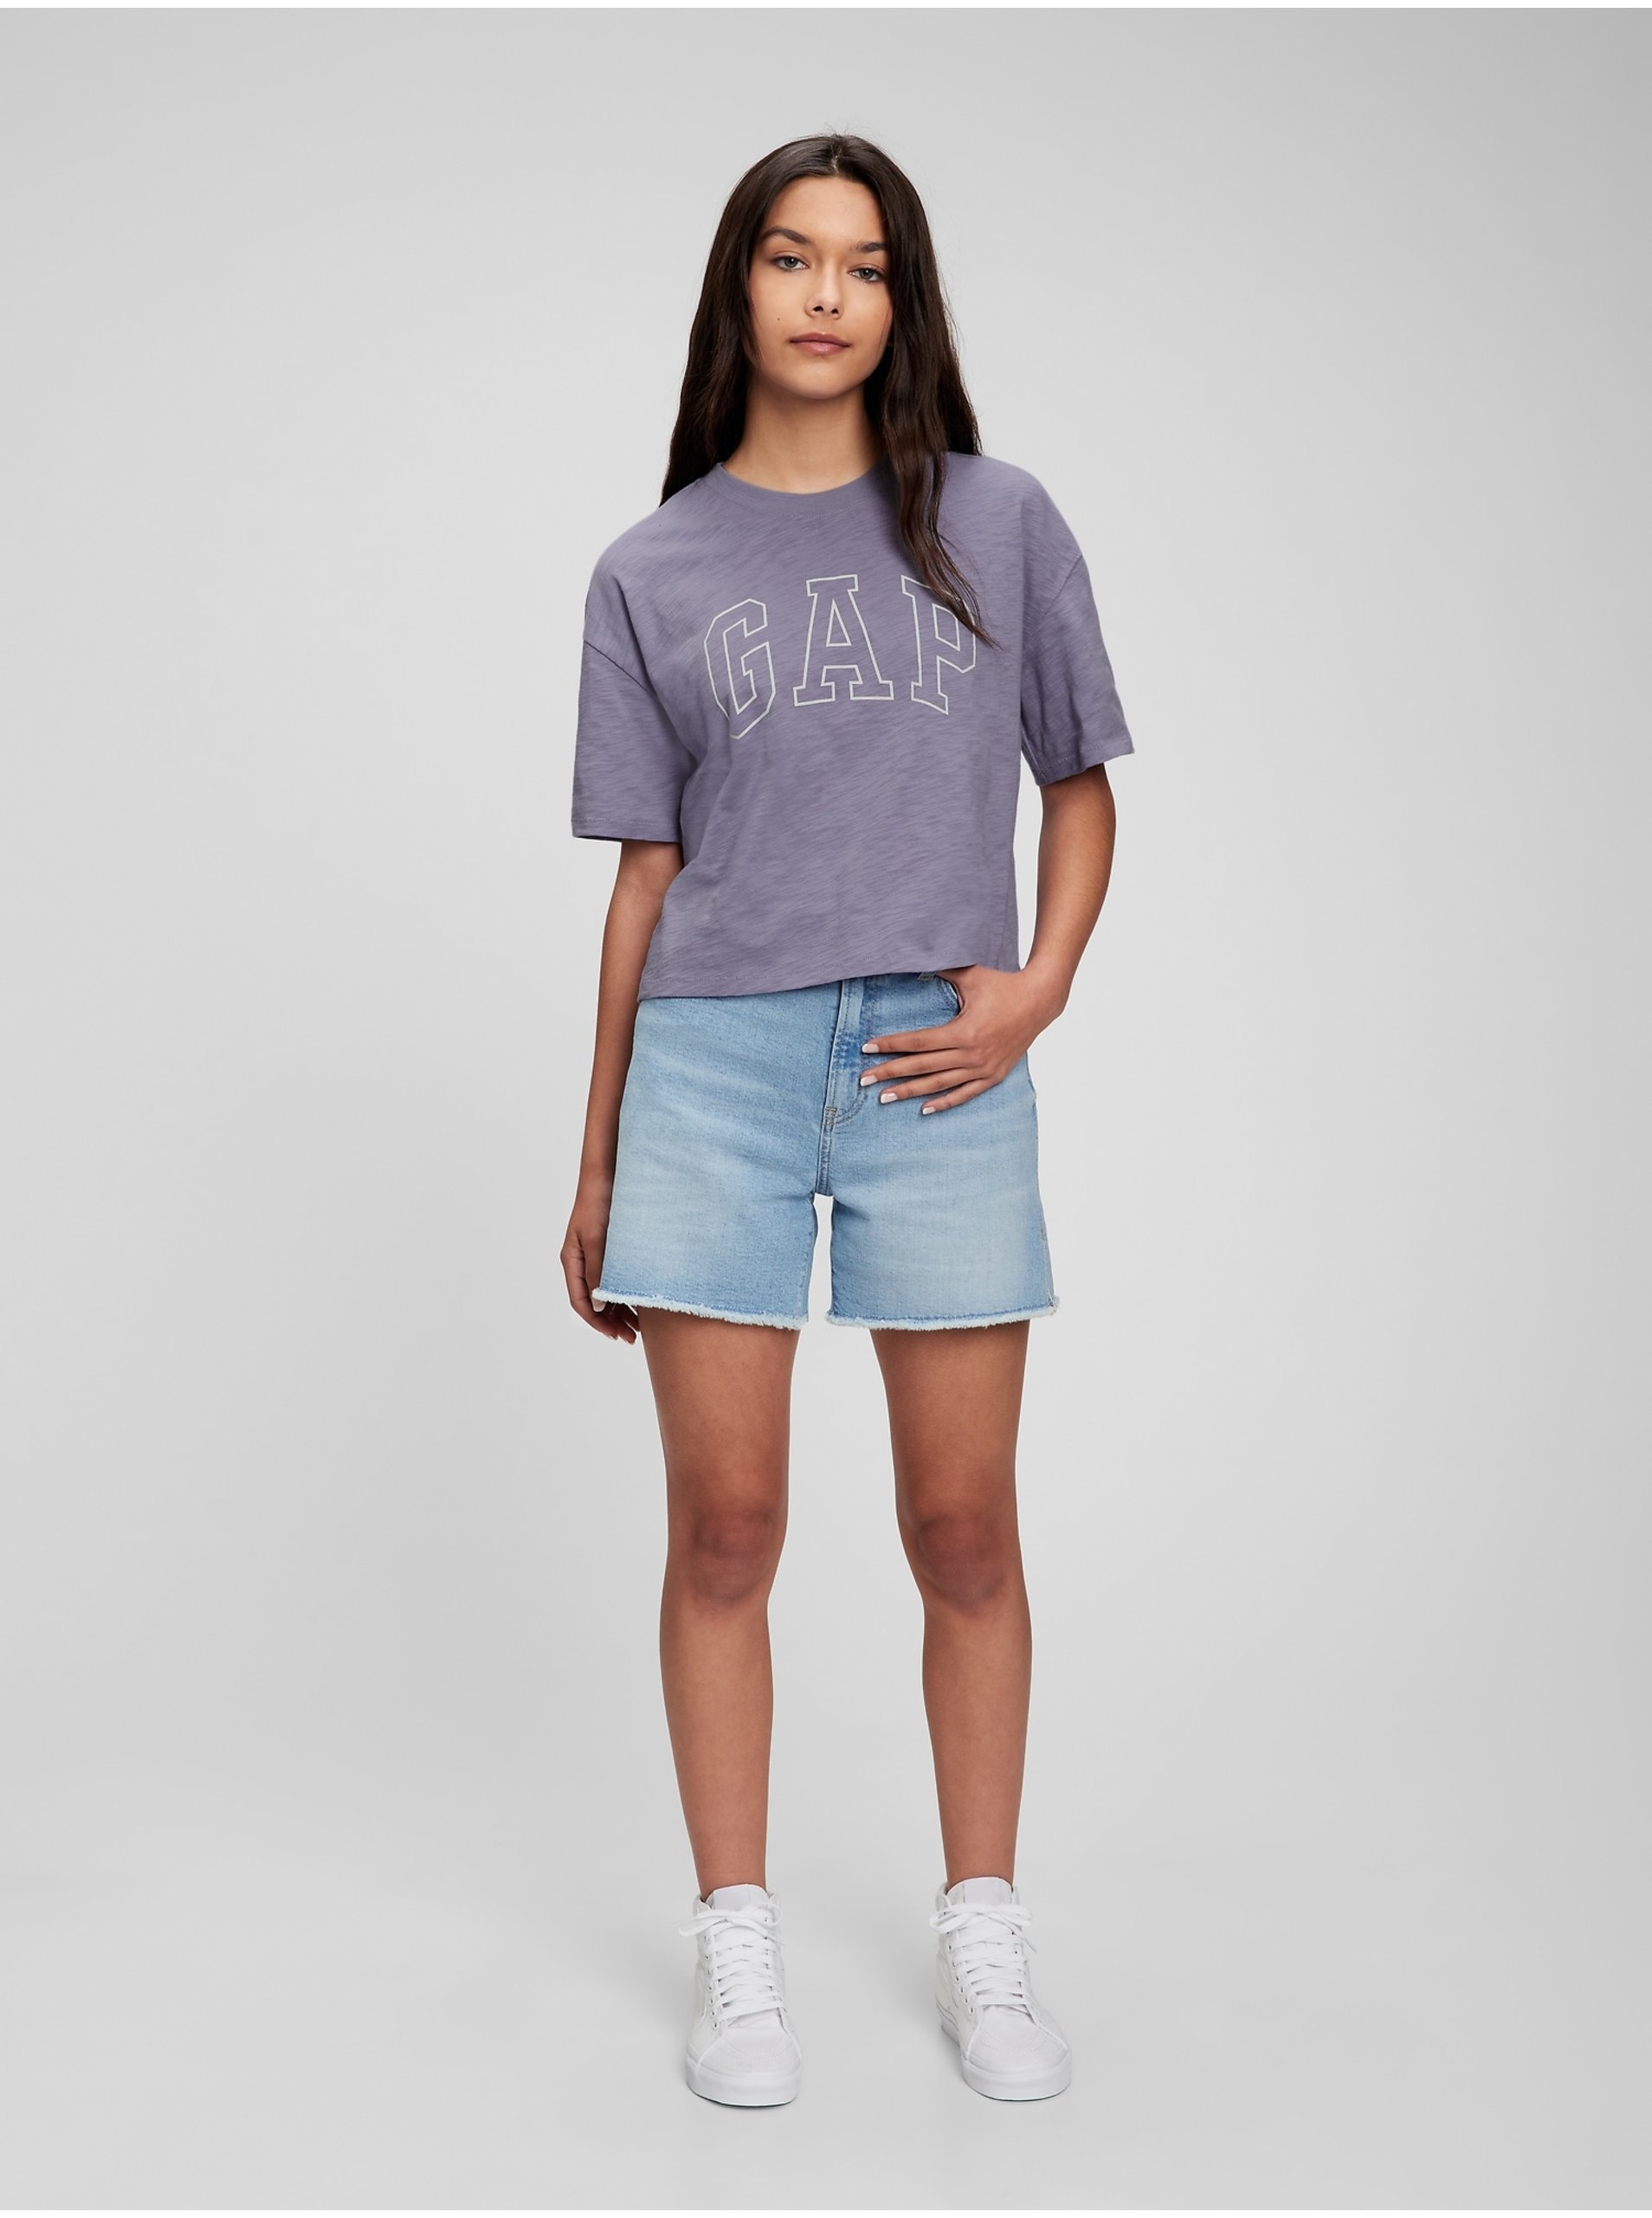 Lacno Fialové dievčenské tričko GAP Teen z organickej bavlny